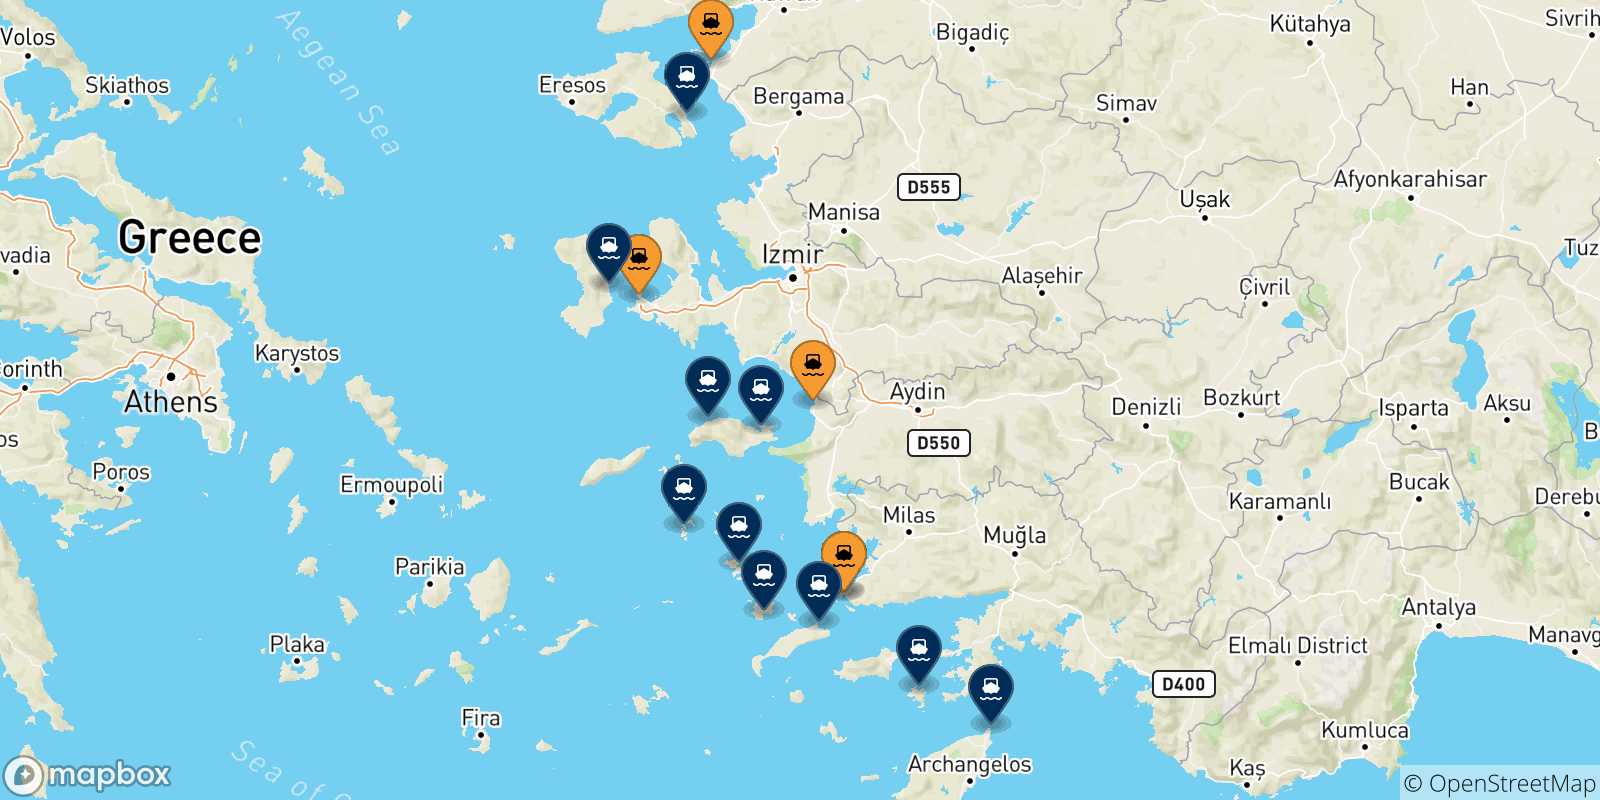 Mappa delle possibili rotte tra la Turchia e la Grecia